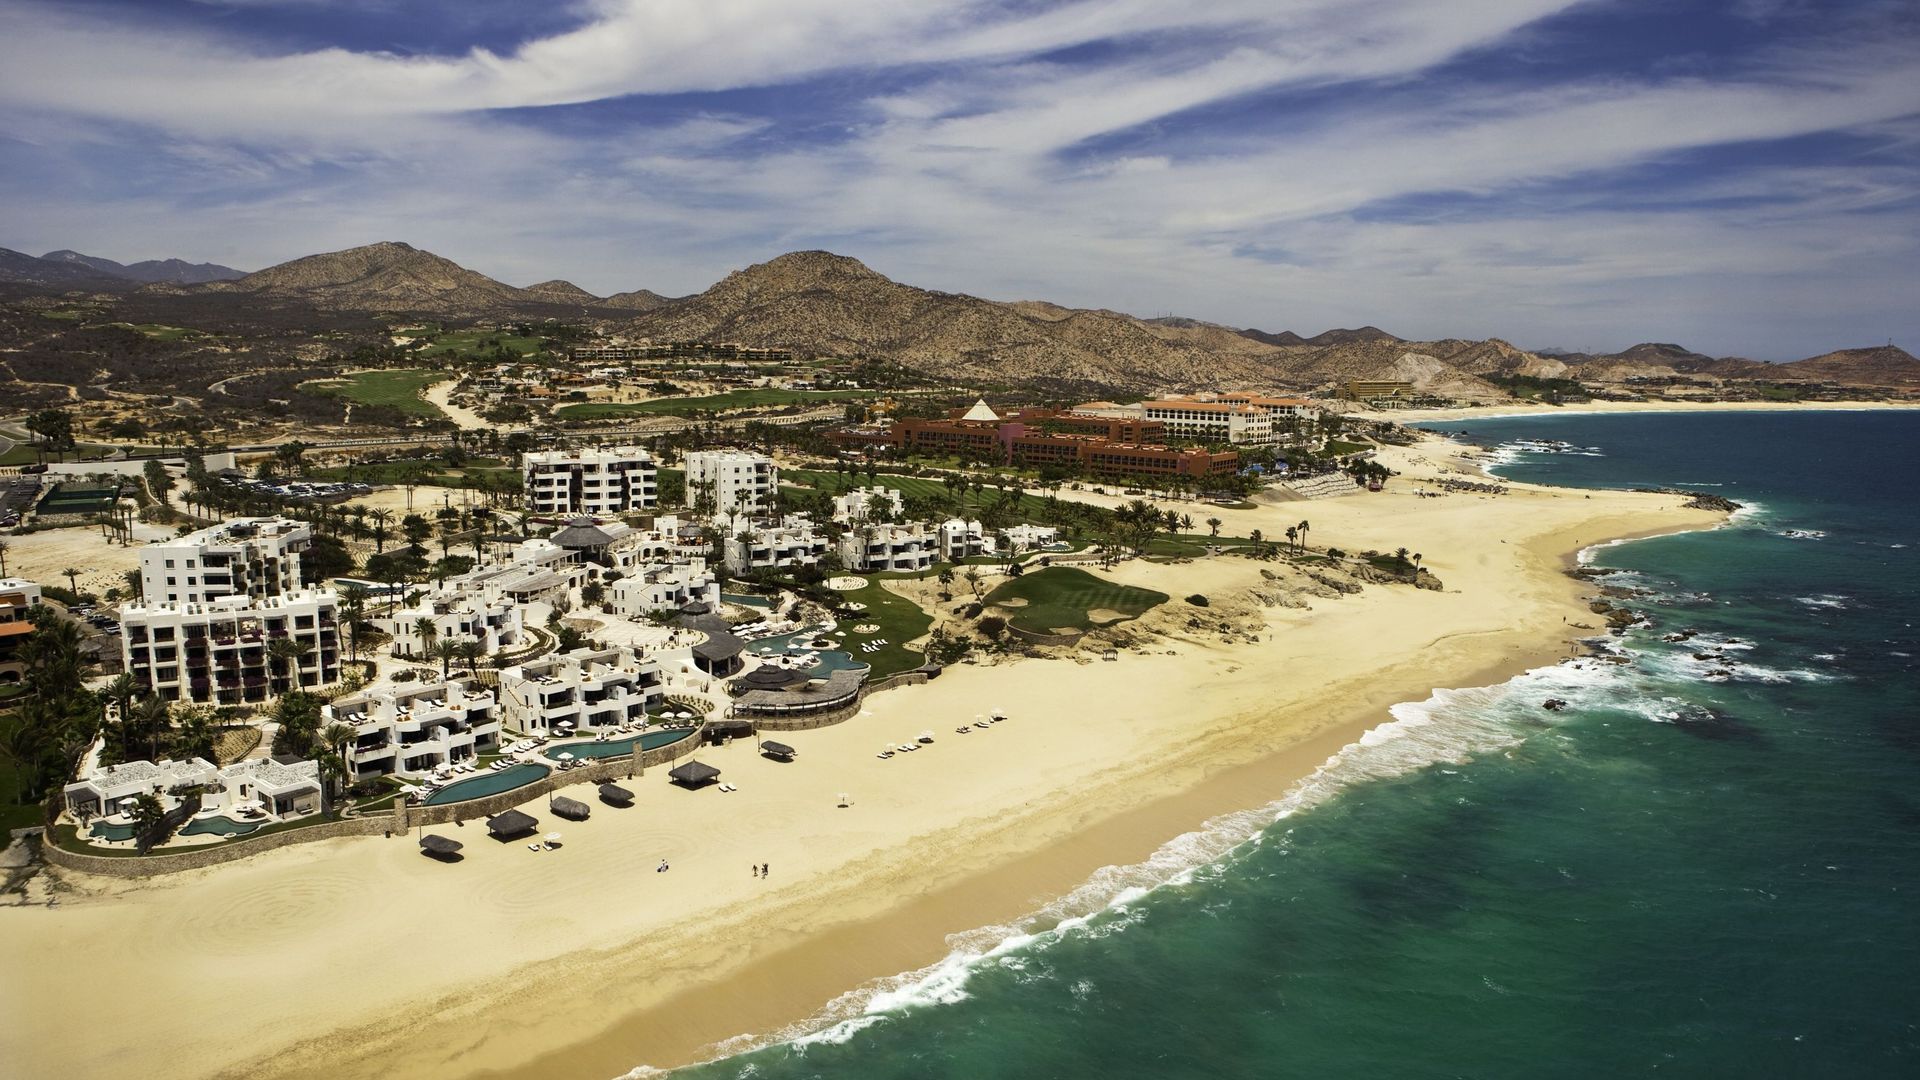 Hotel Beach on the Gulf of California in San Jose del Cabo